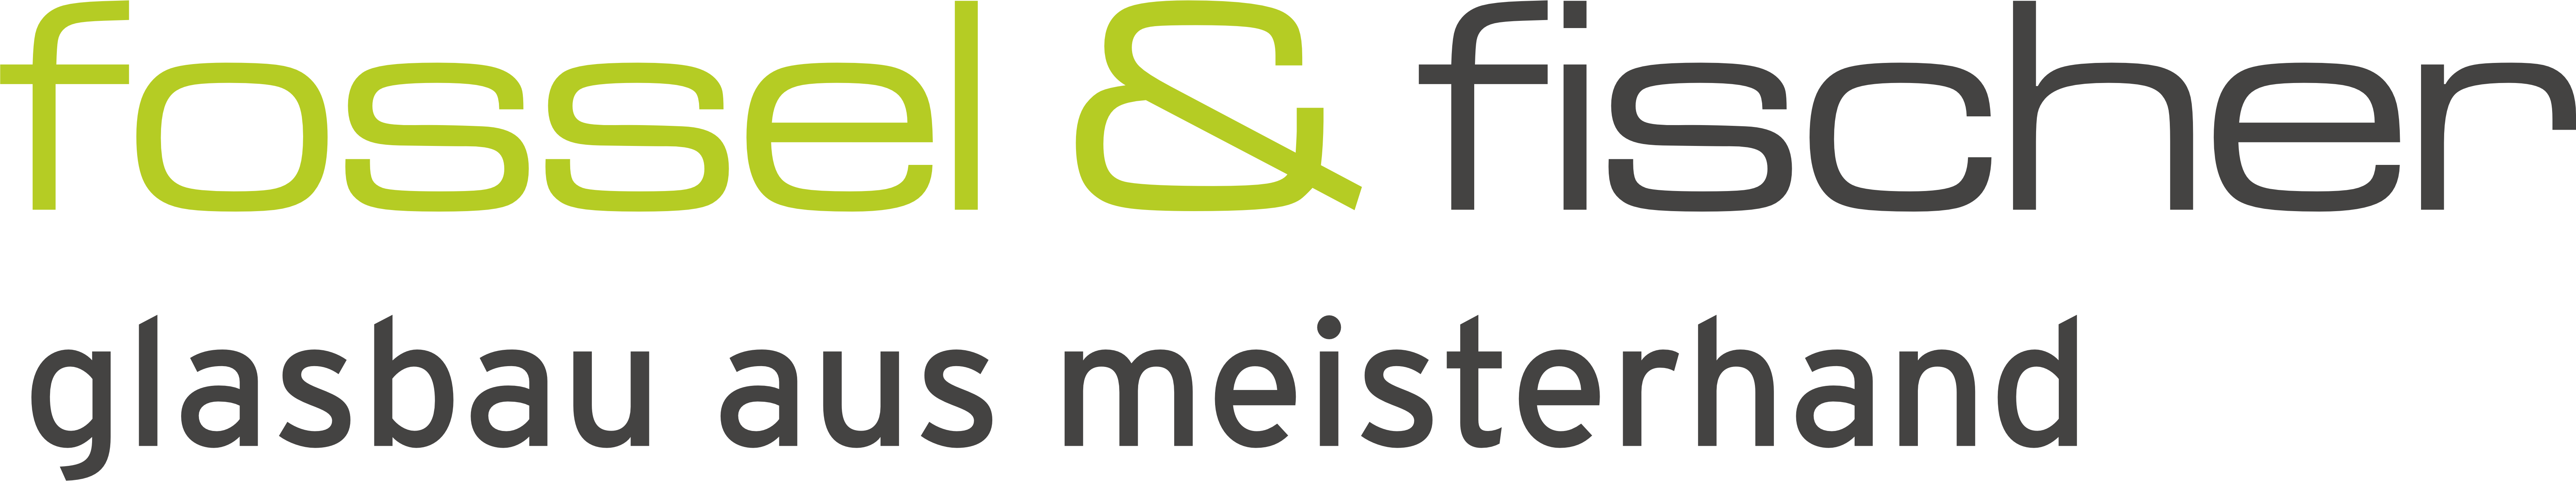 fossel & fischer GmbH